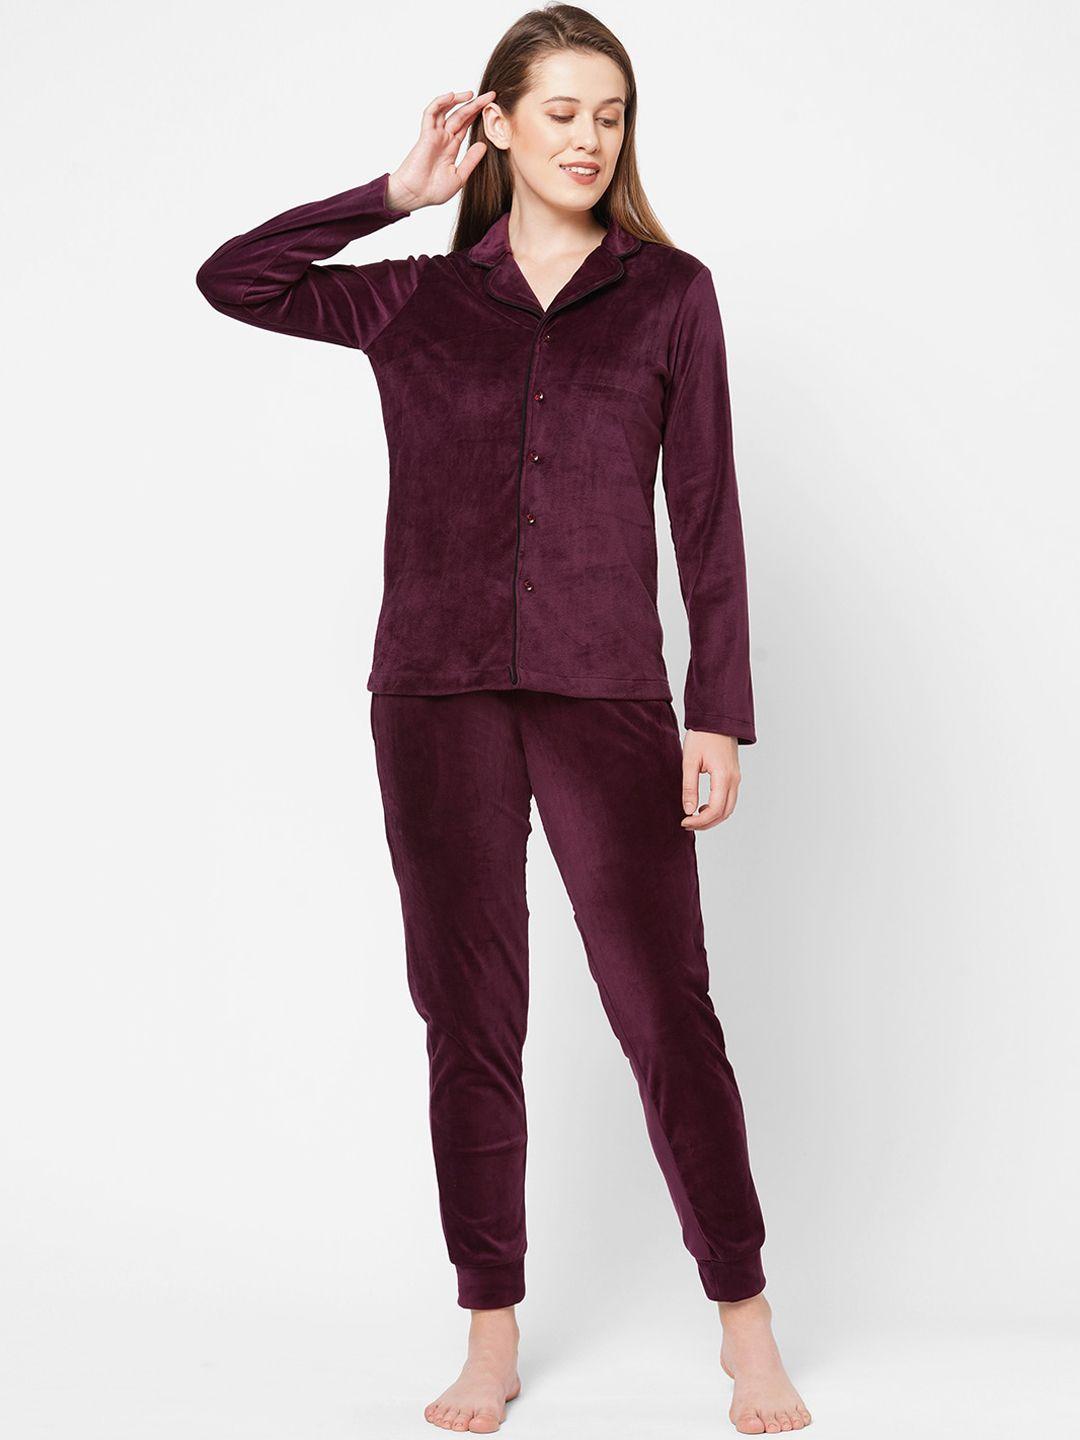 drape-in-vogue-women-burgundy-velvet-night-suit